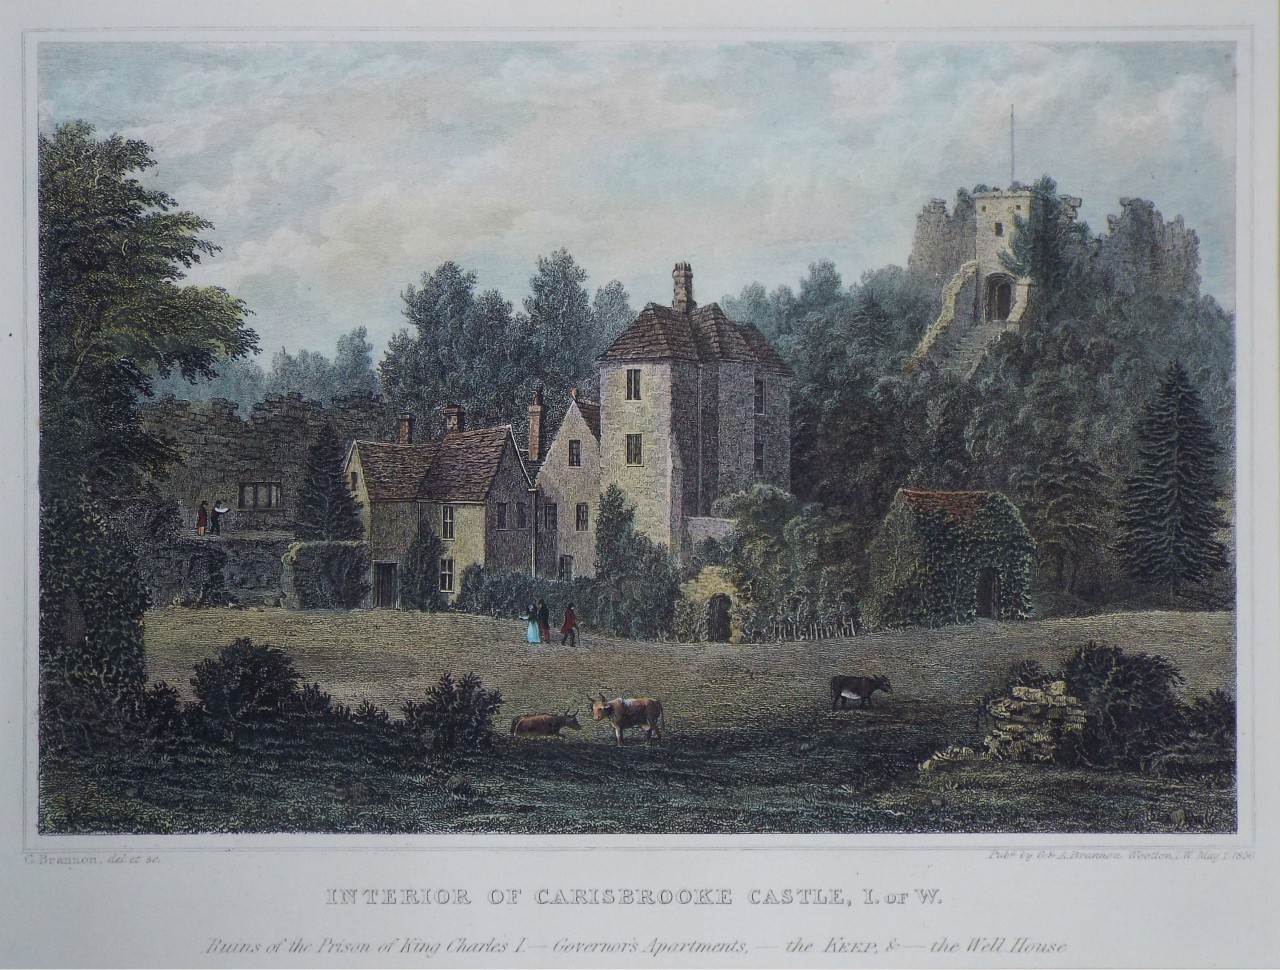 Print - Interior of Carisbrooke Castle, I. of W. - Brannon